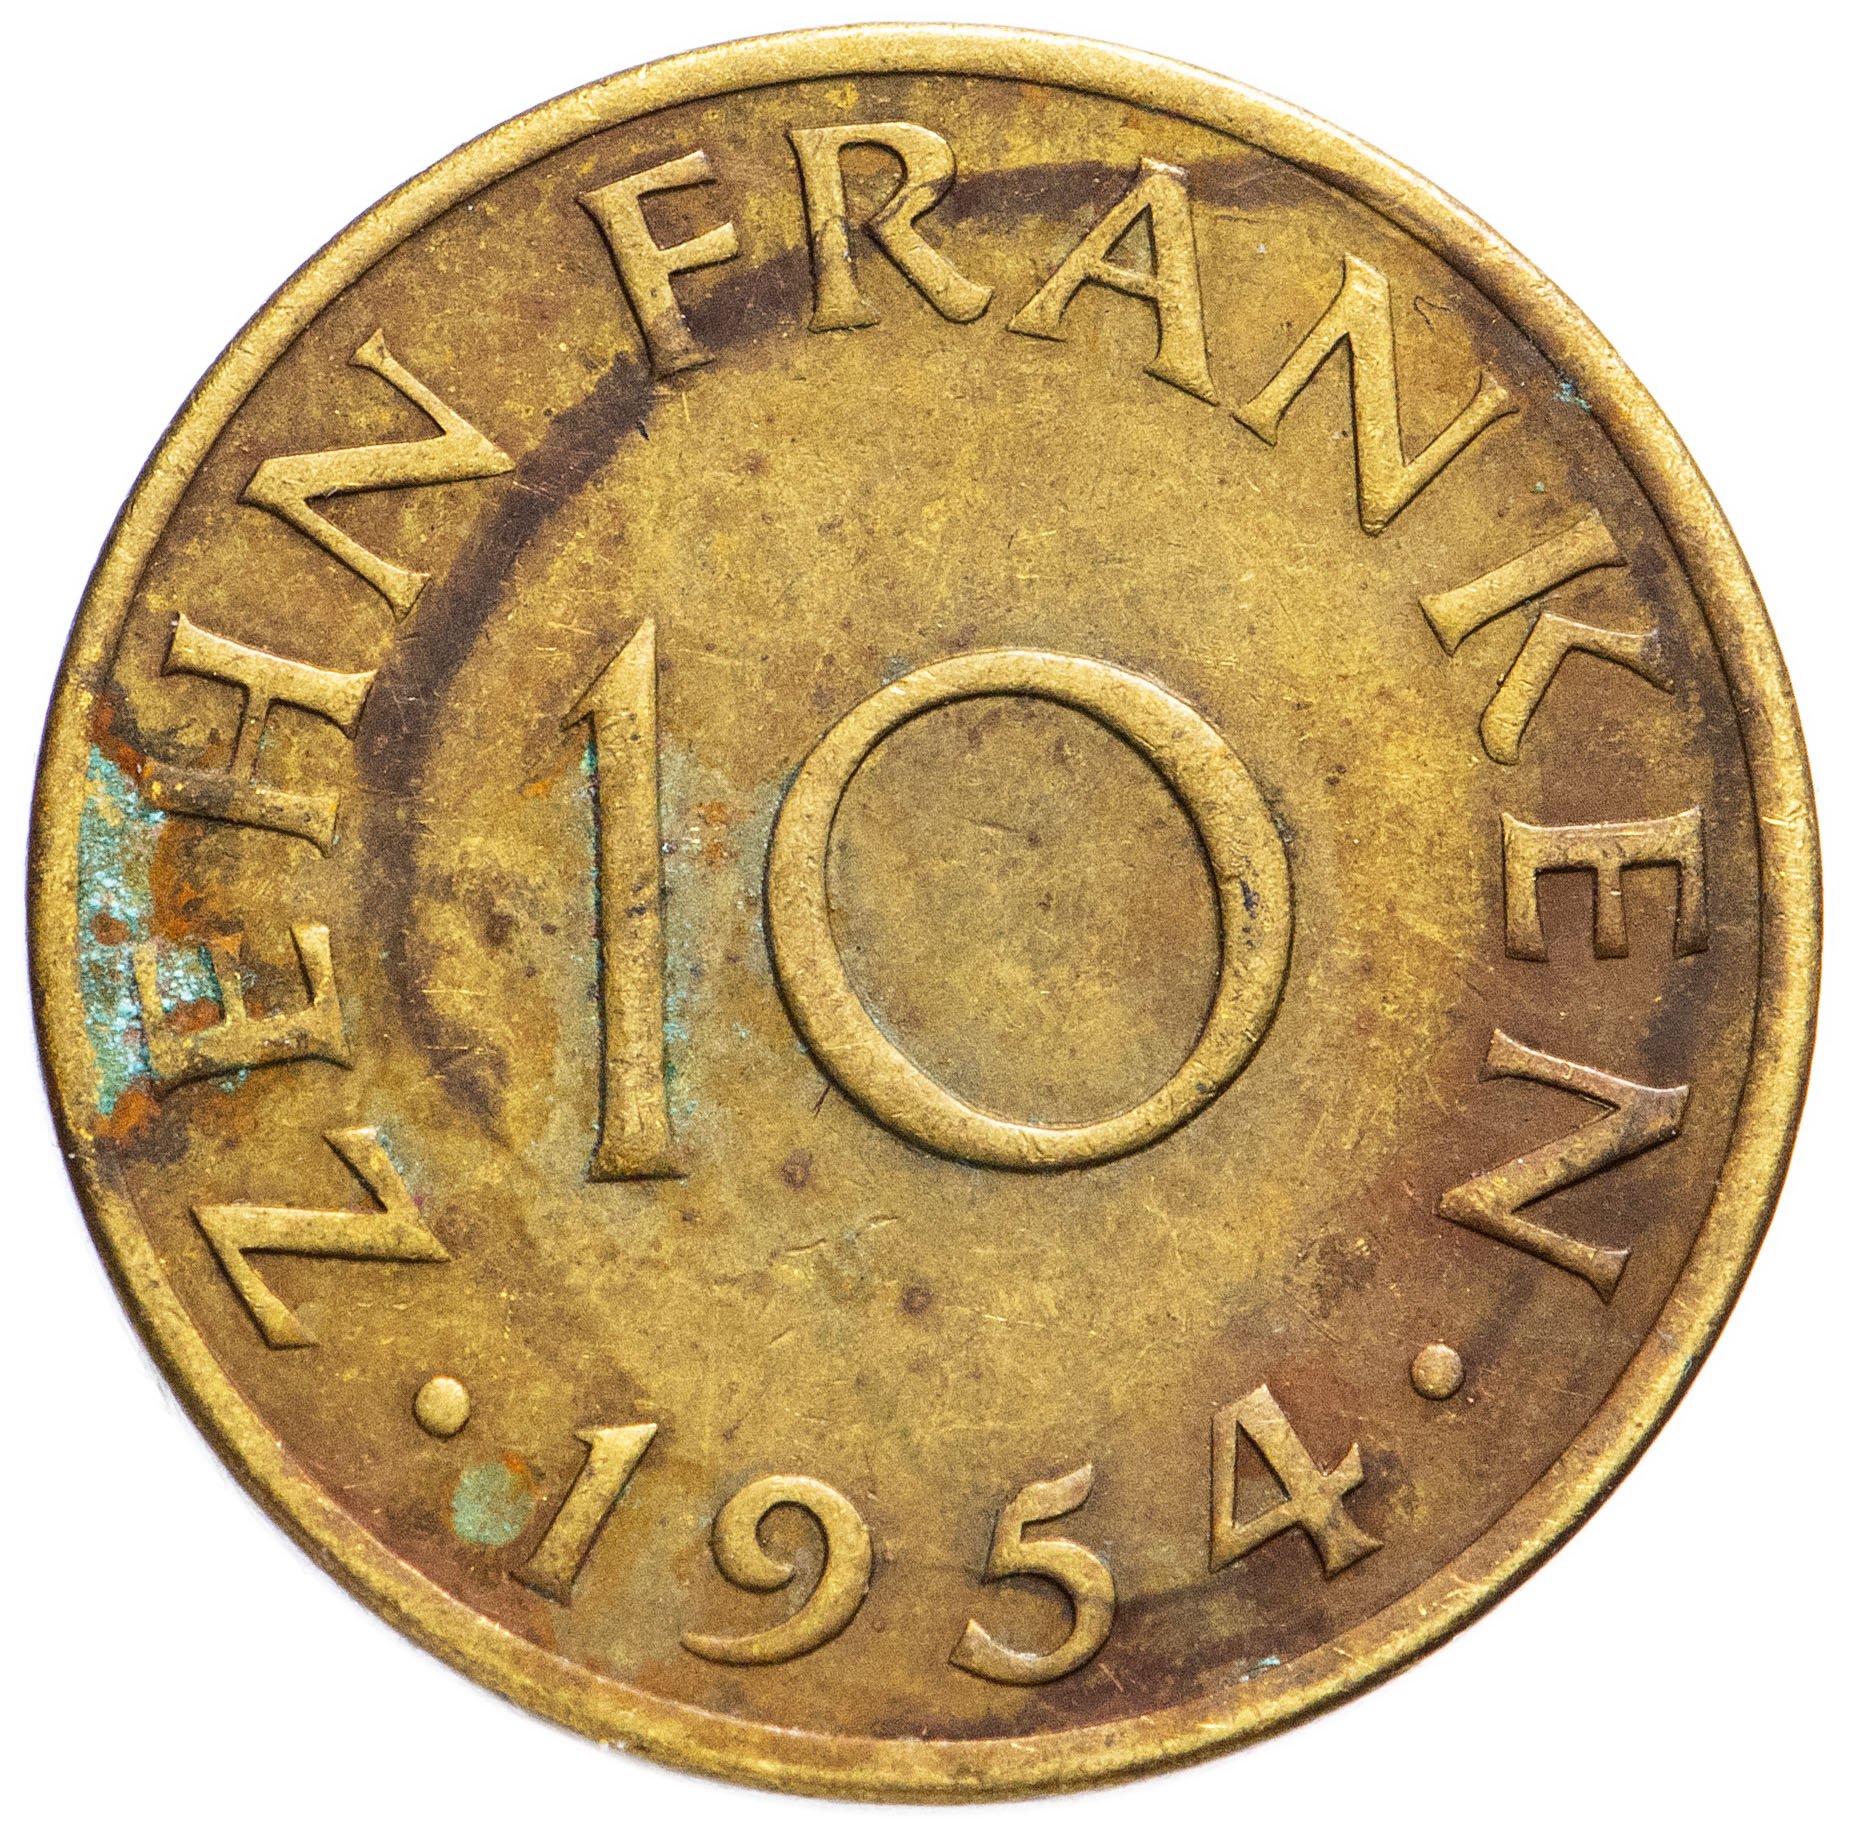 Монета 1954 года цена. Американская монета 1954 года.